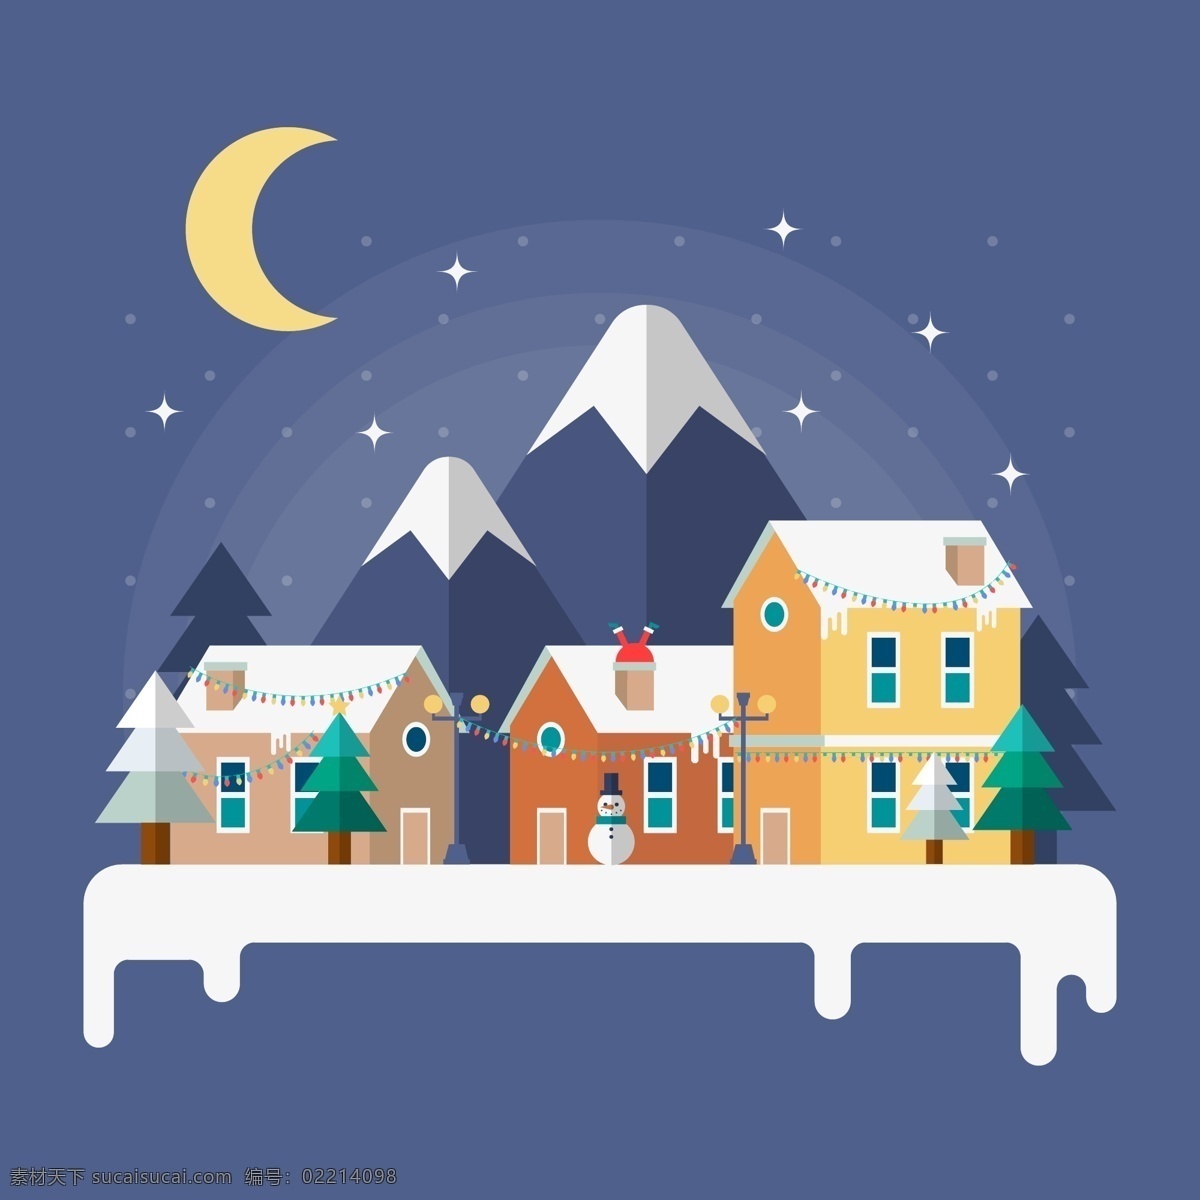 冬夜 村庄 里 风景 插画 冬天 房子 雪景 夜景 月亮